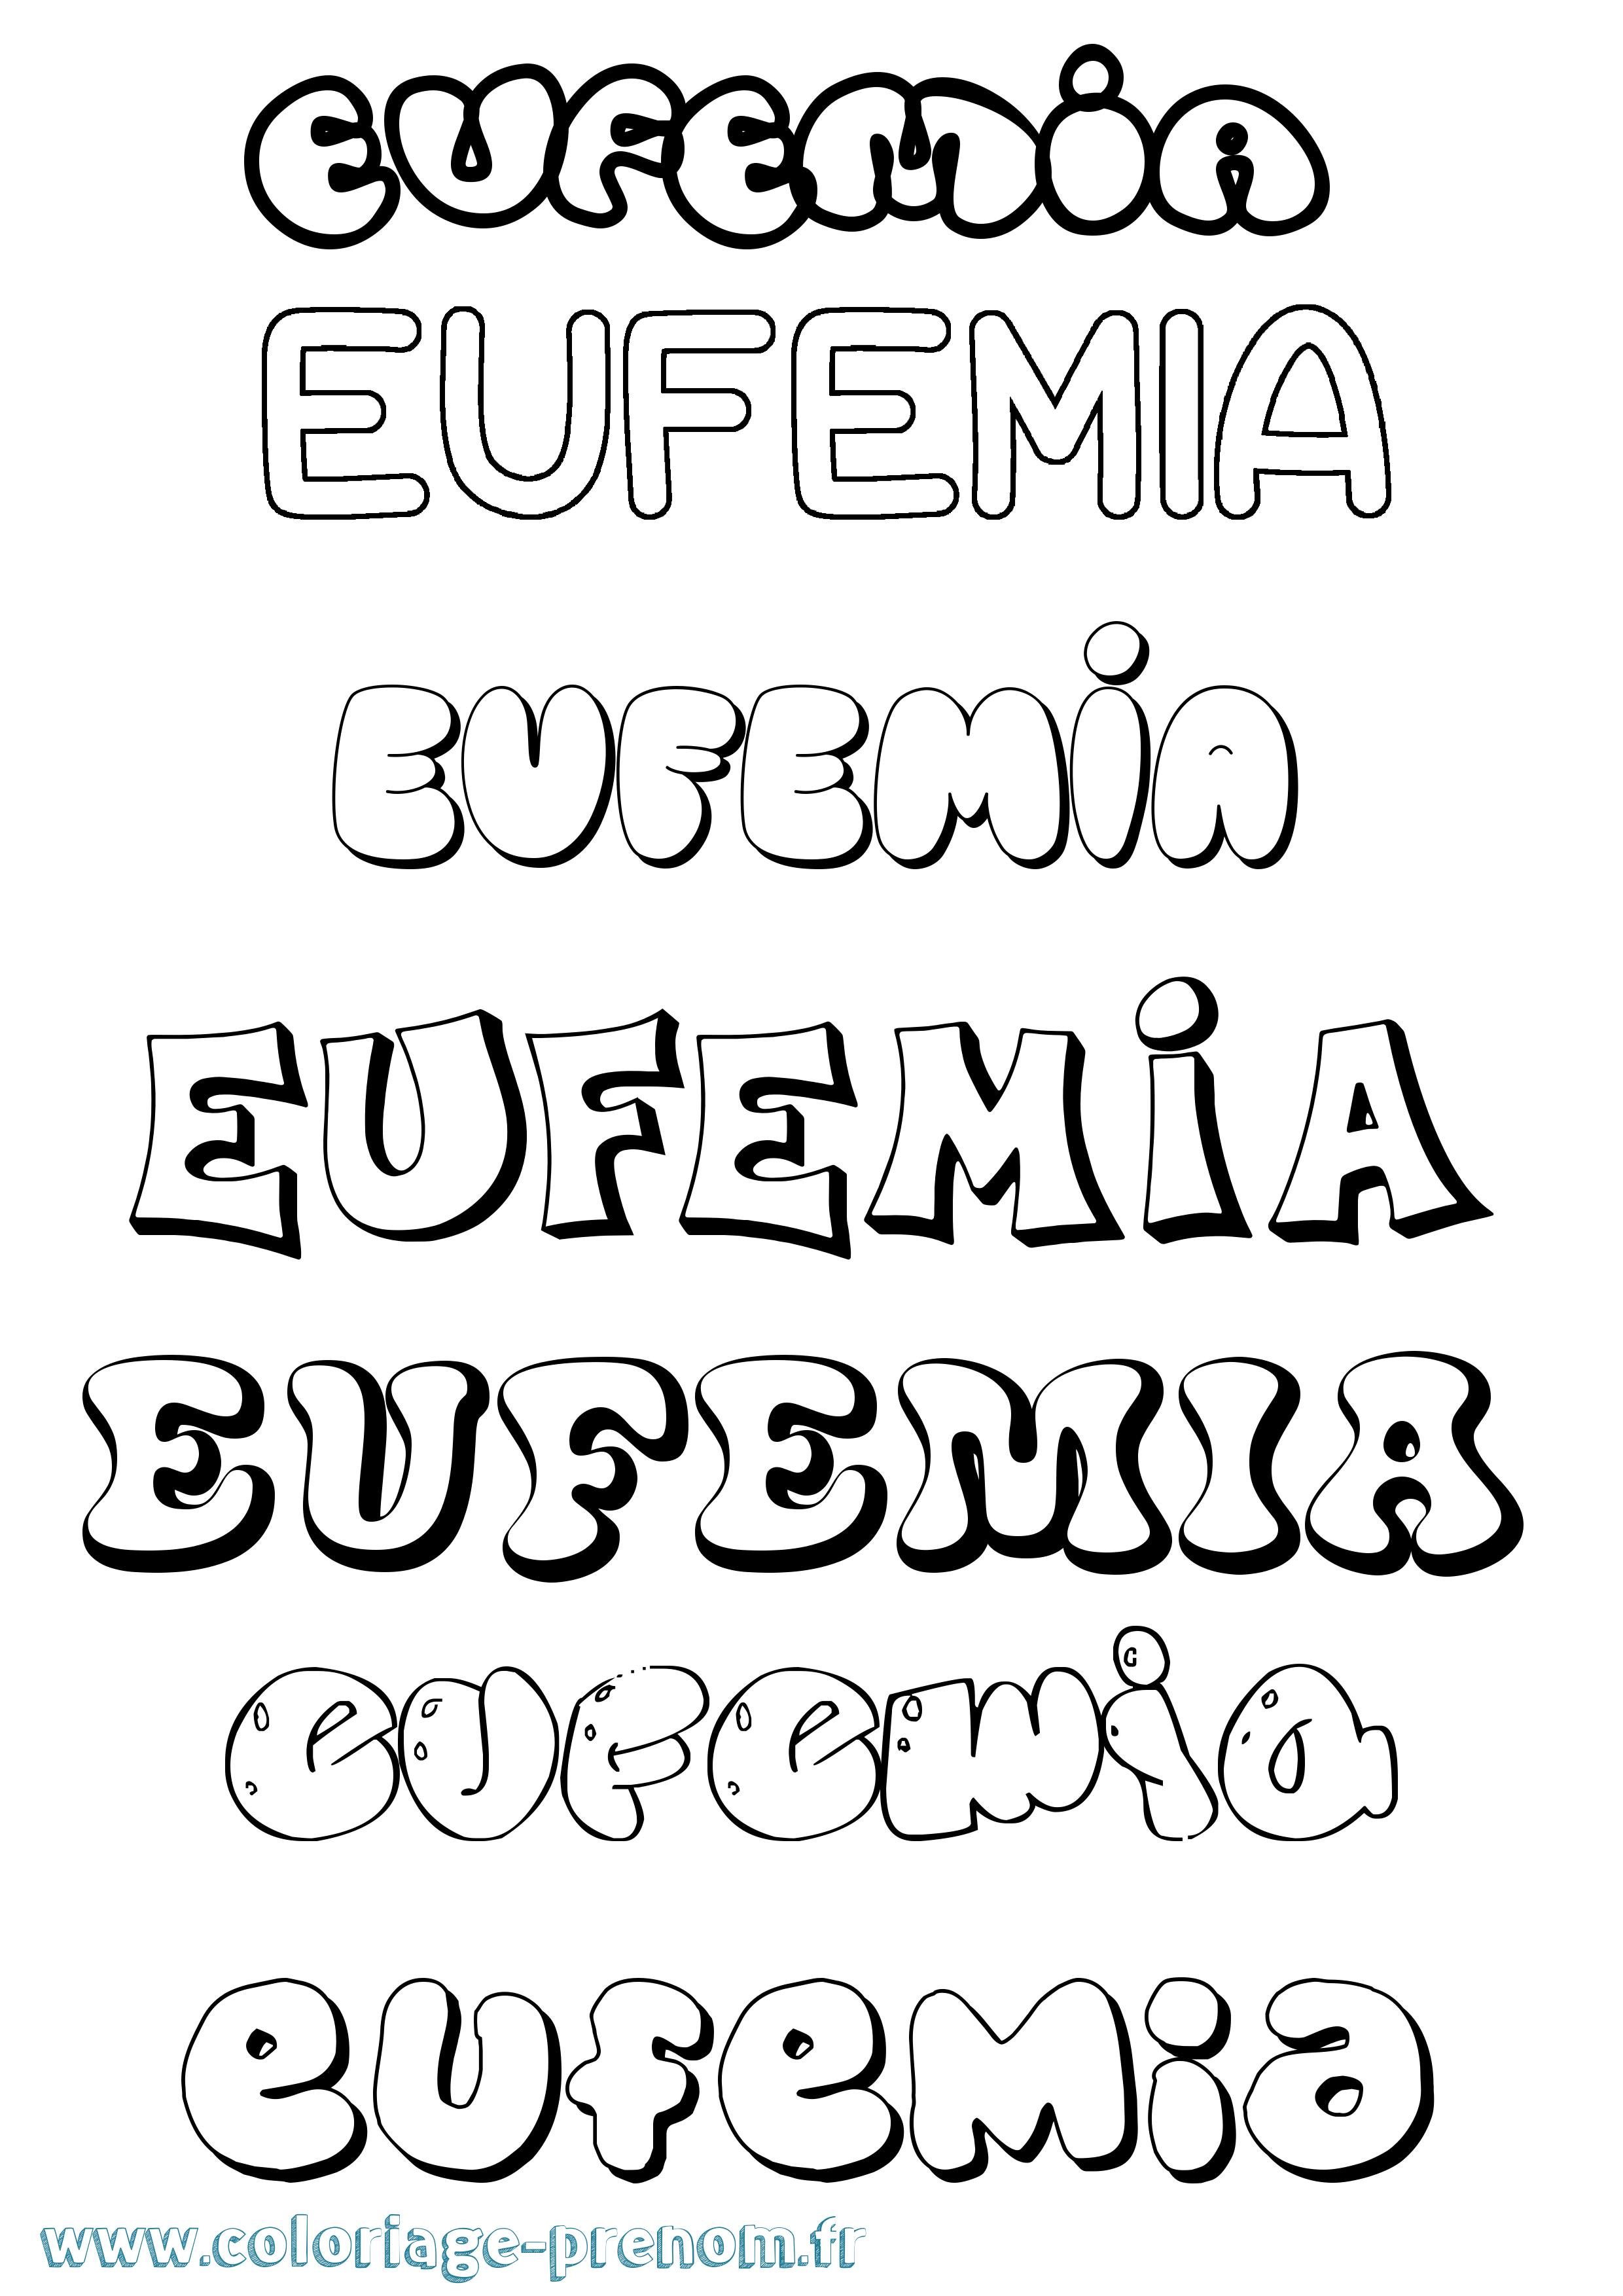 Coloriage prénom Eufemia Bubble